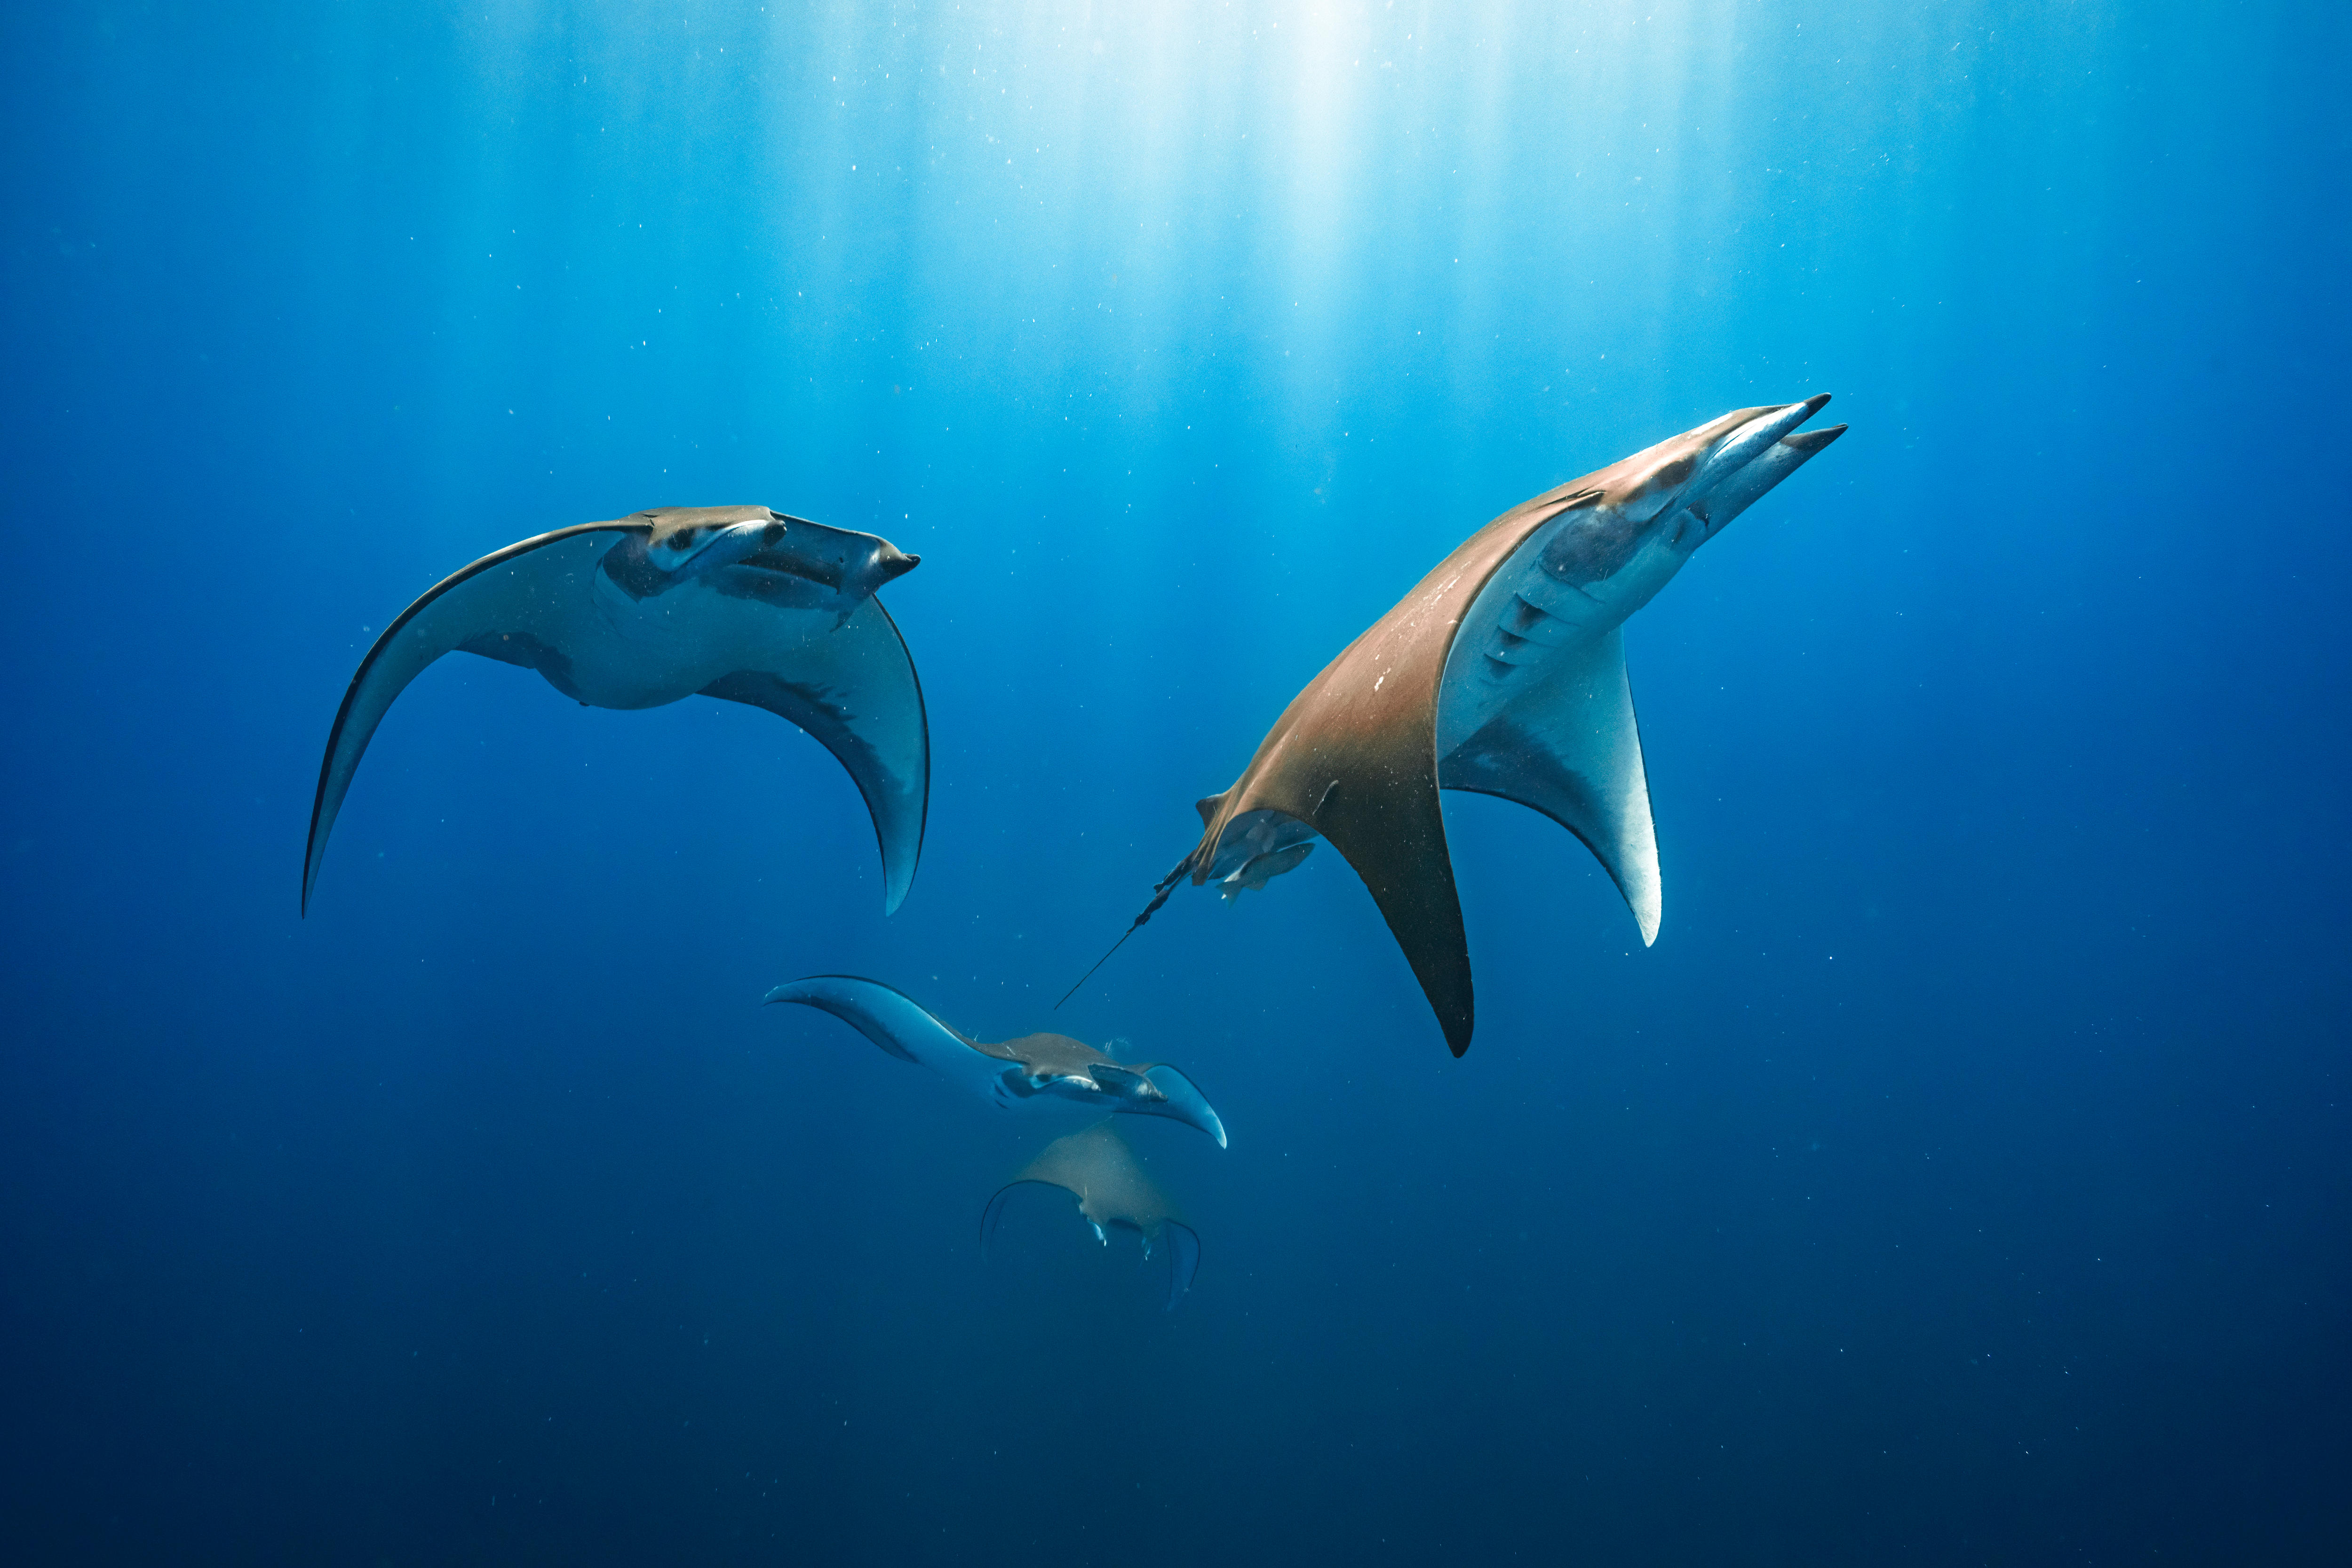 Four Chilean devil rays glide through the ocean.